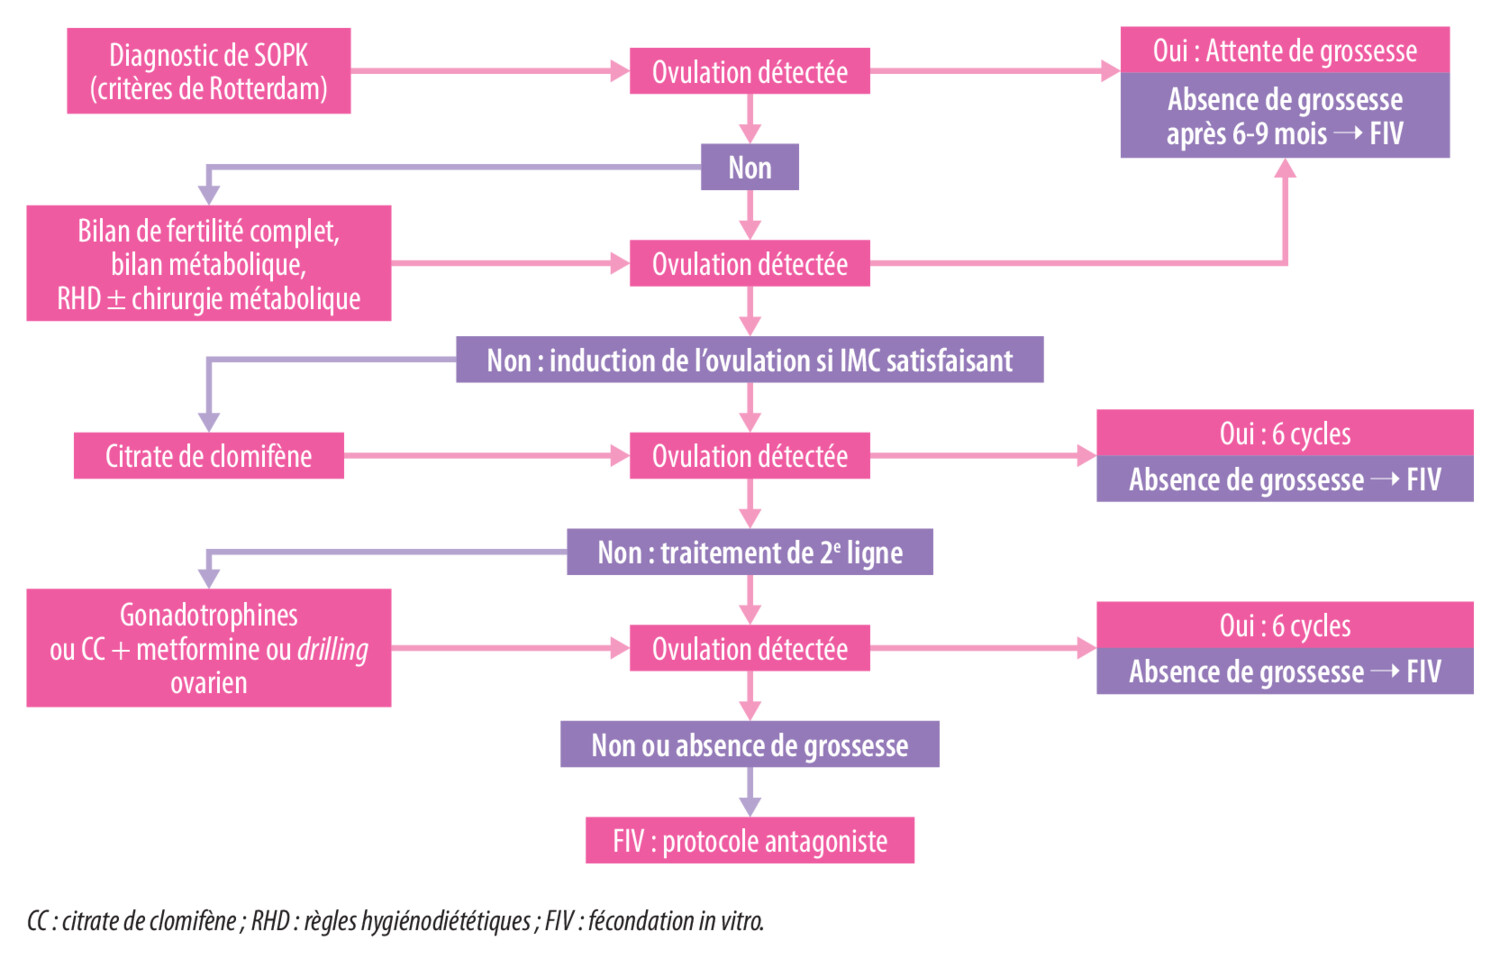 Prise en charge de l’infertilité dans le SOPK - Figure 4